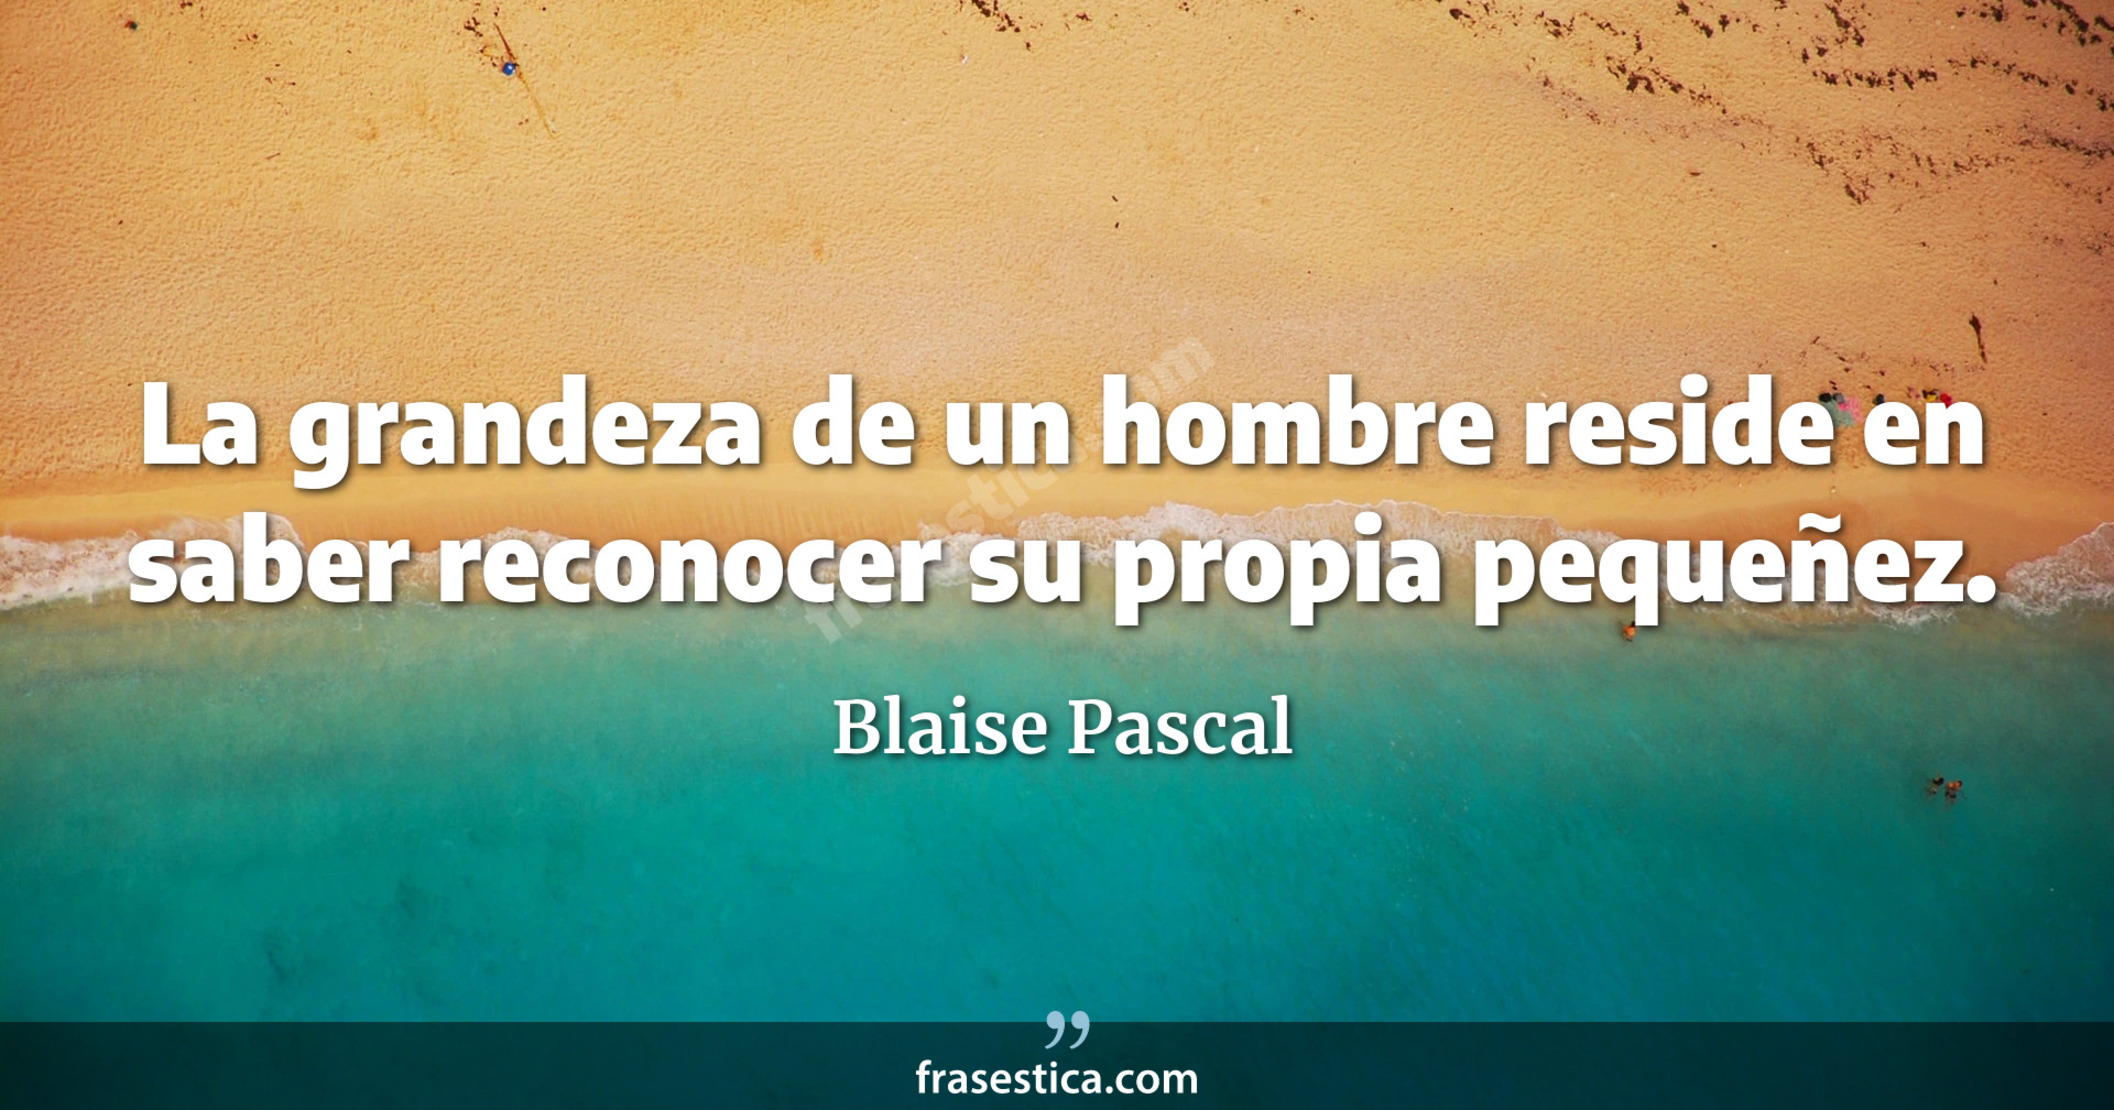 La grandeza de un hombre reside en saber reconocer su propia pequeñez. - Blaise Pascal